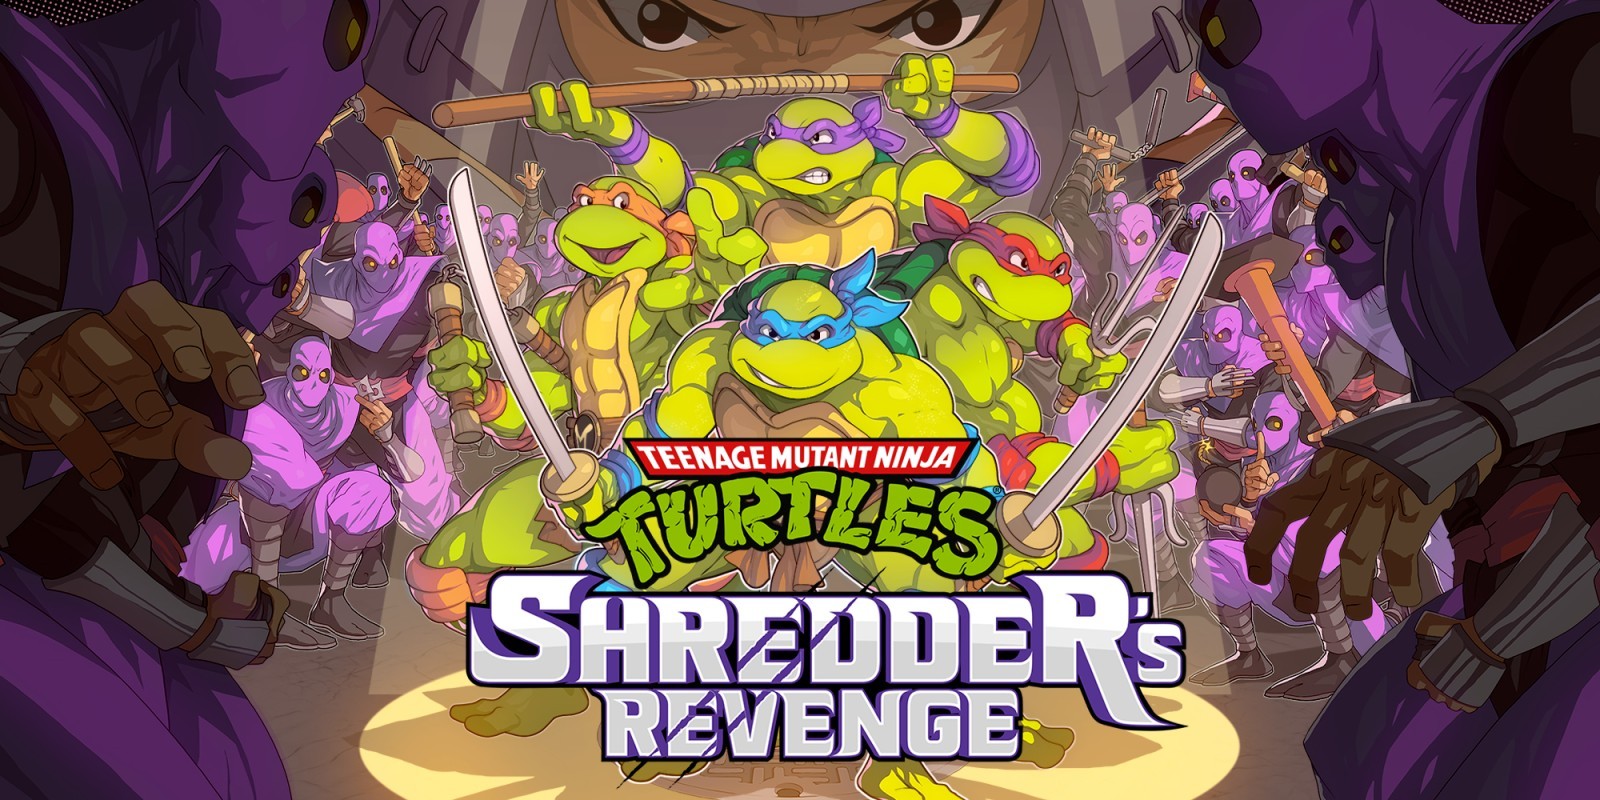 Shredders Revenge